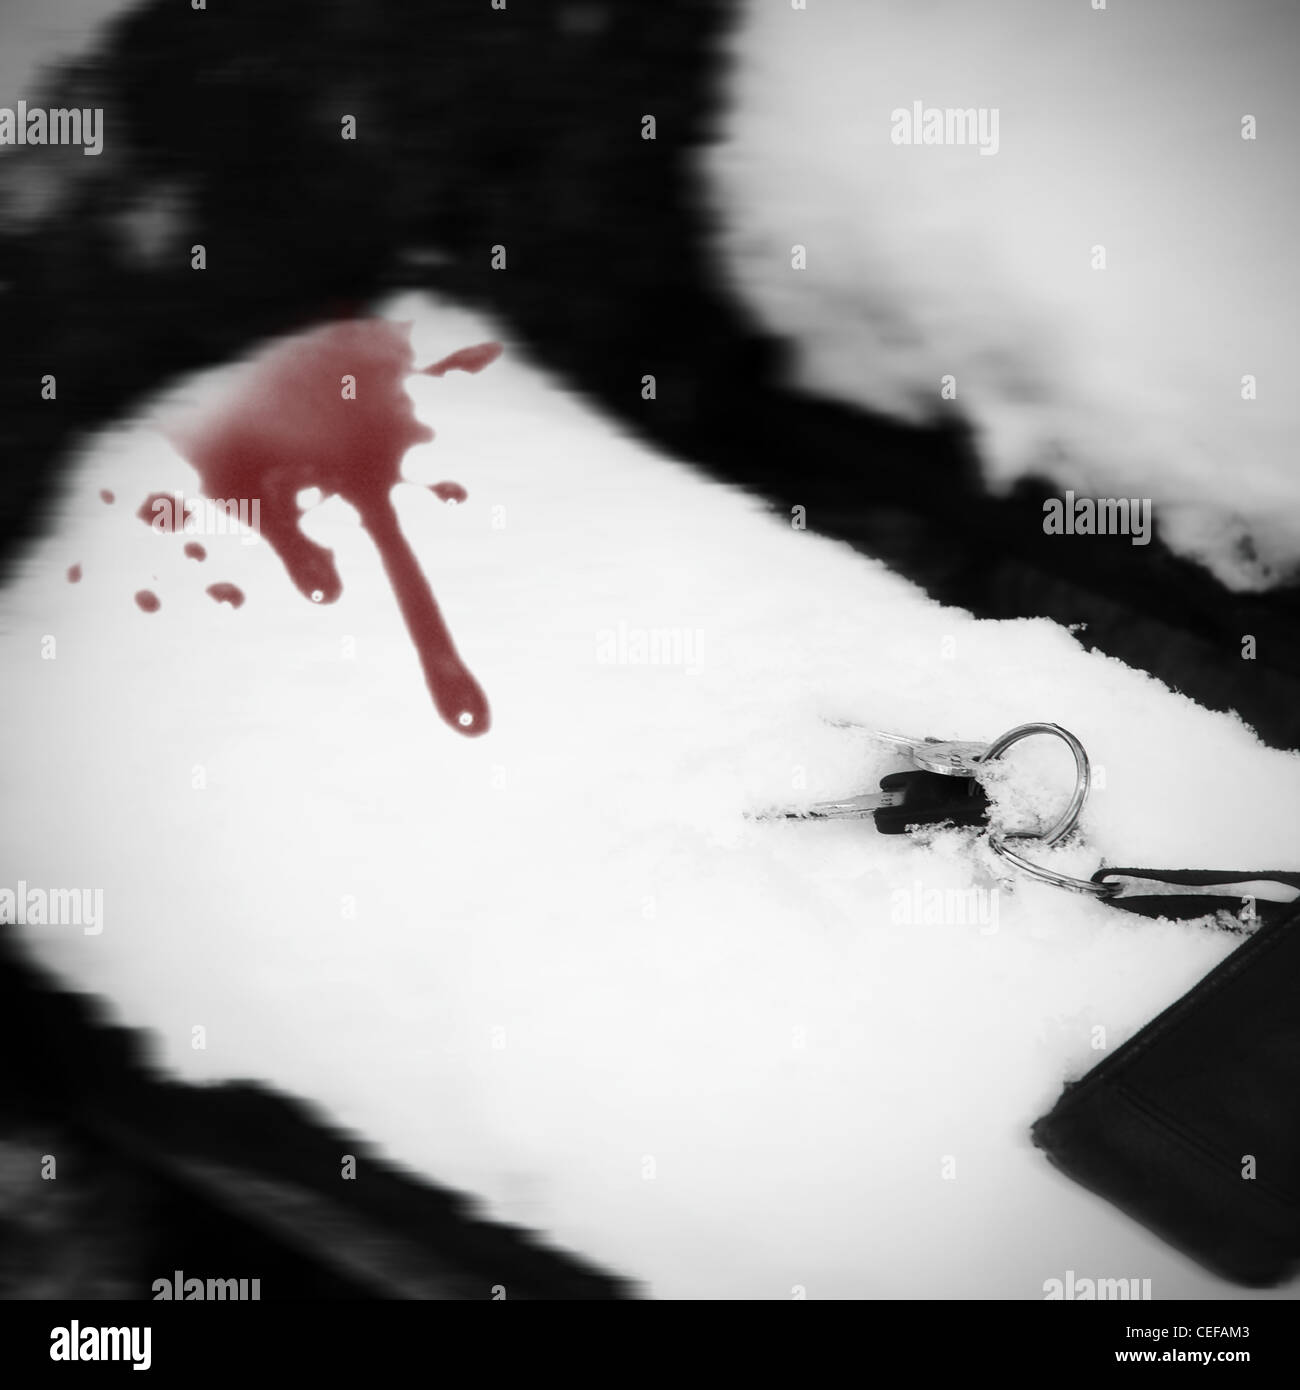 Llavero en un banco de nieve con gotas de sangre Foto de stock